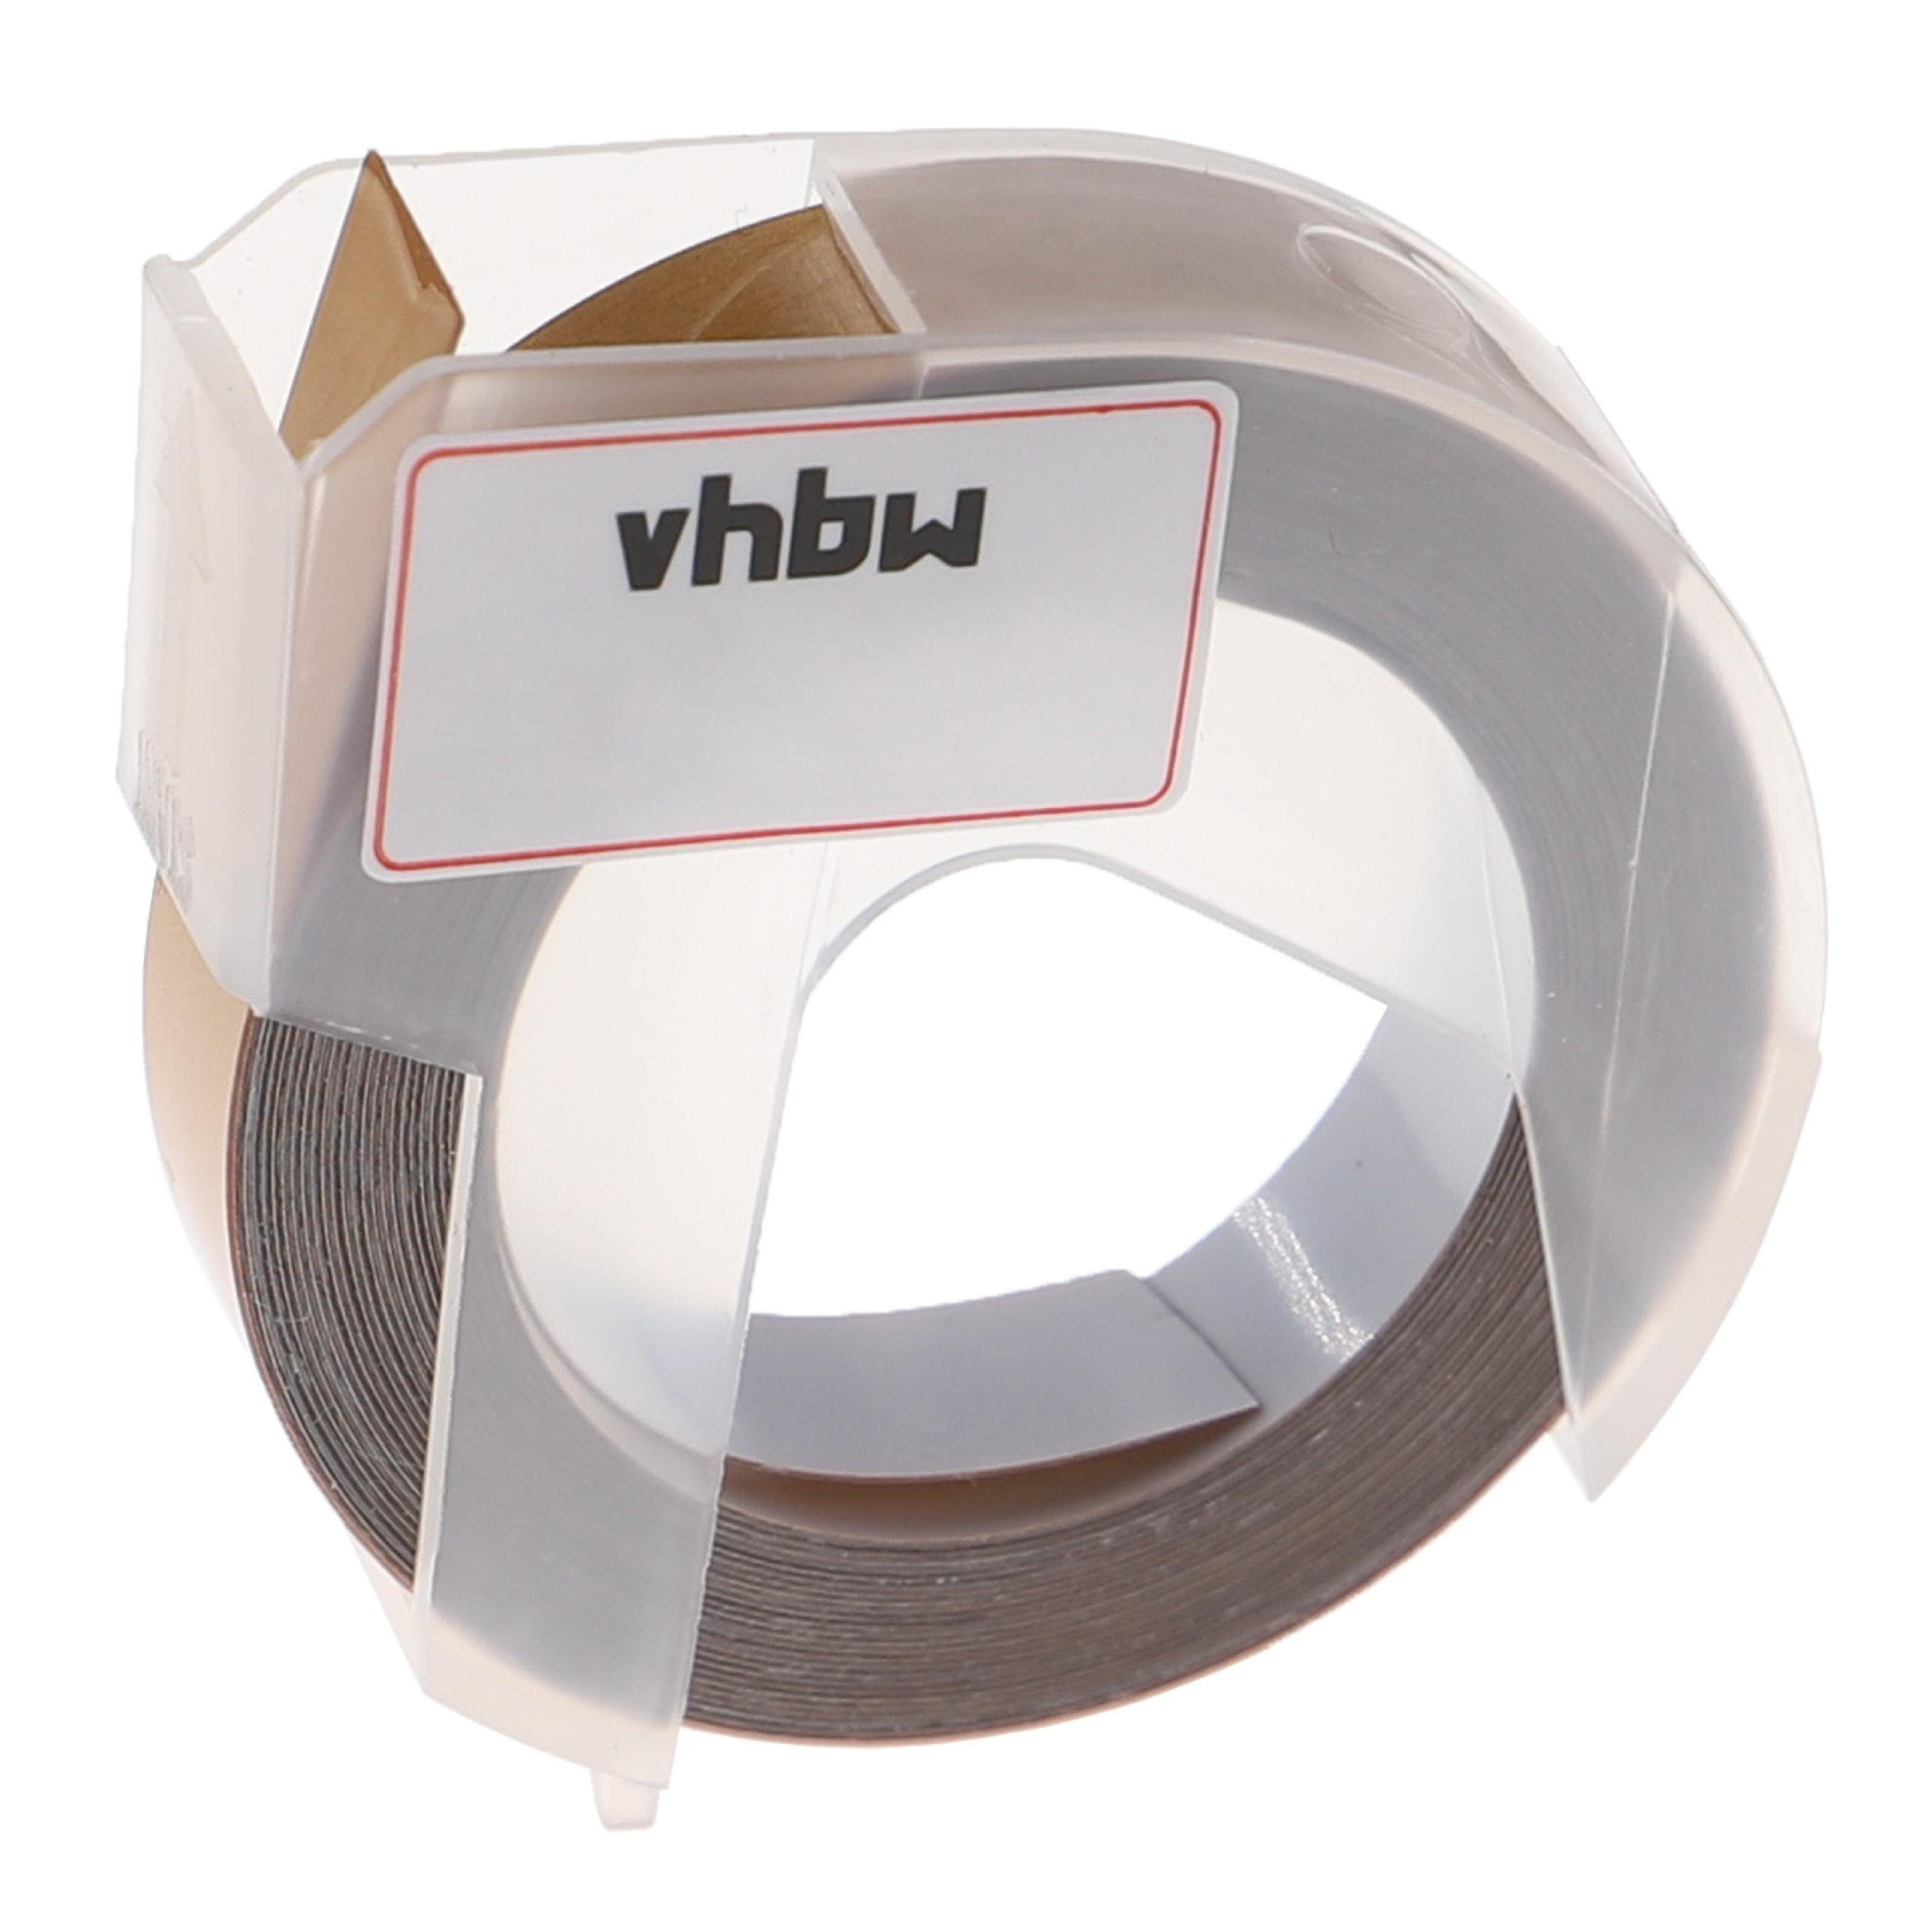 vhbw Beschriftungsband passend für E975 Beschriftungsgerät / Phomemo Kopierer Drucker &